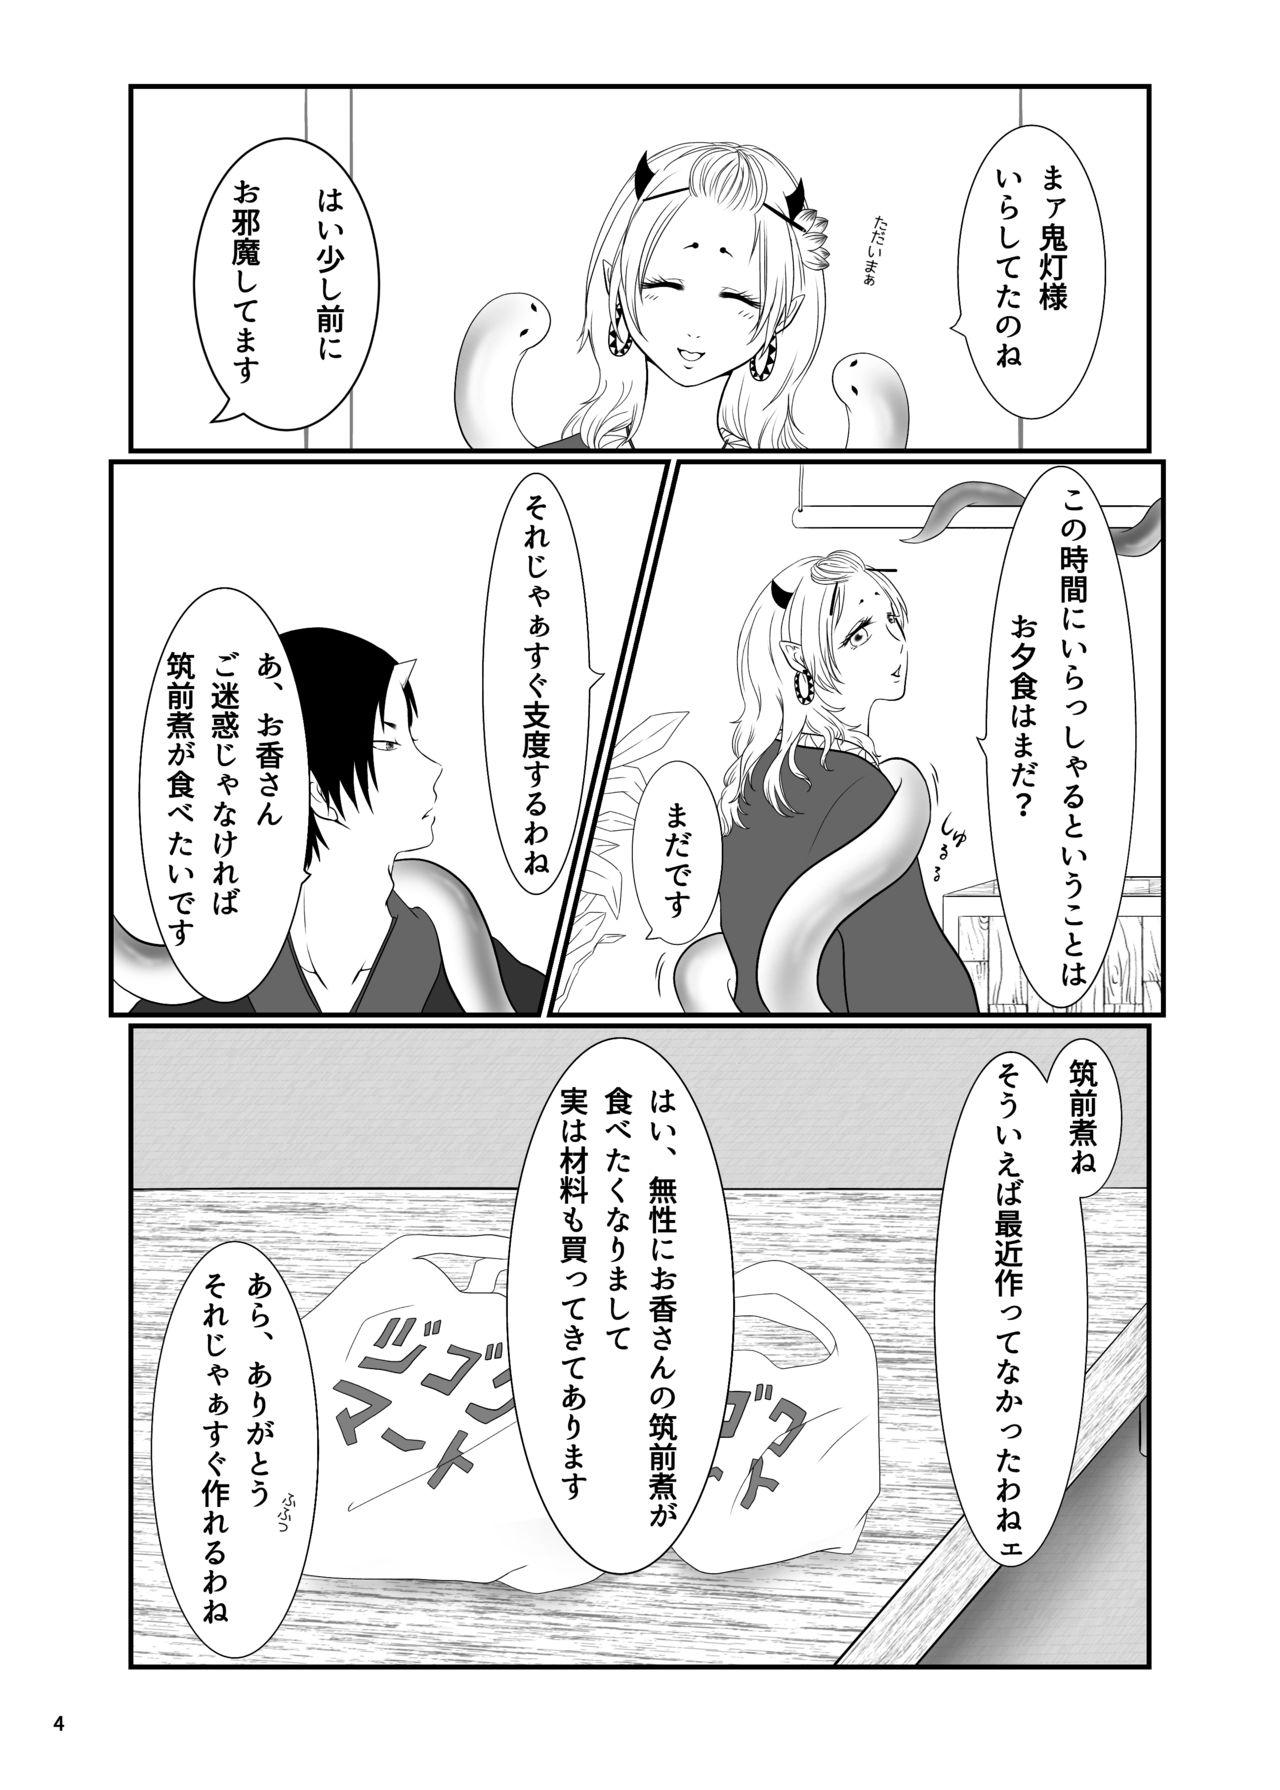 Deflowered Touni Anata no Mono - Hoozuki no reitetsu Bikini - Page 3